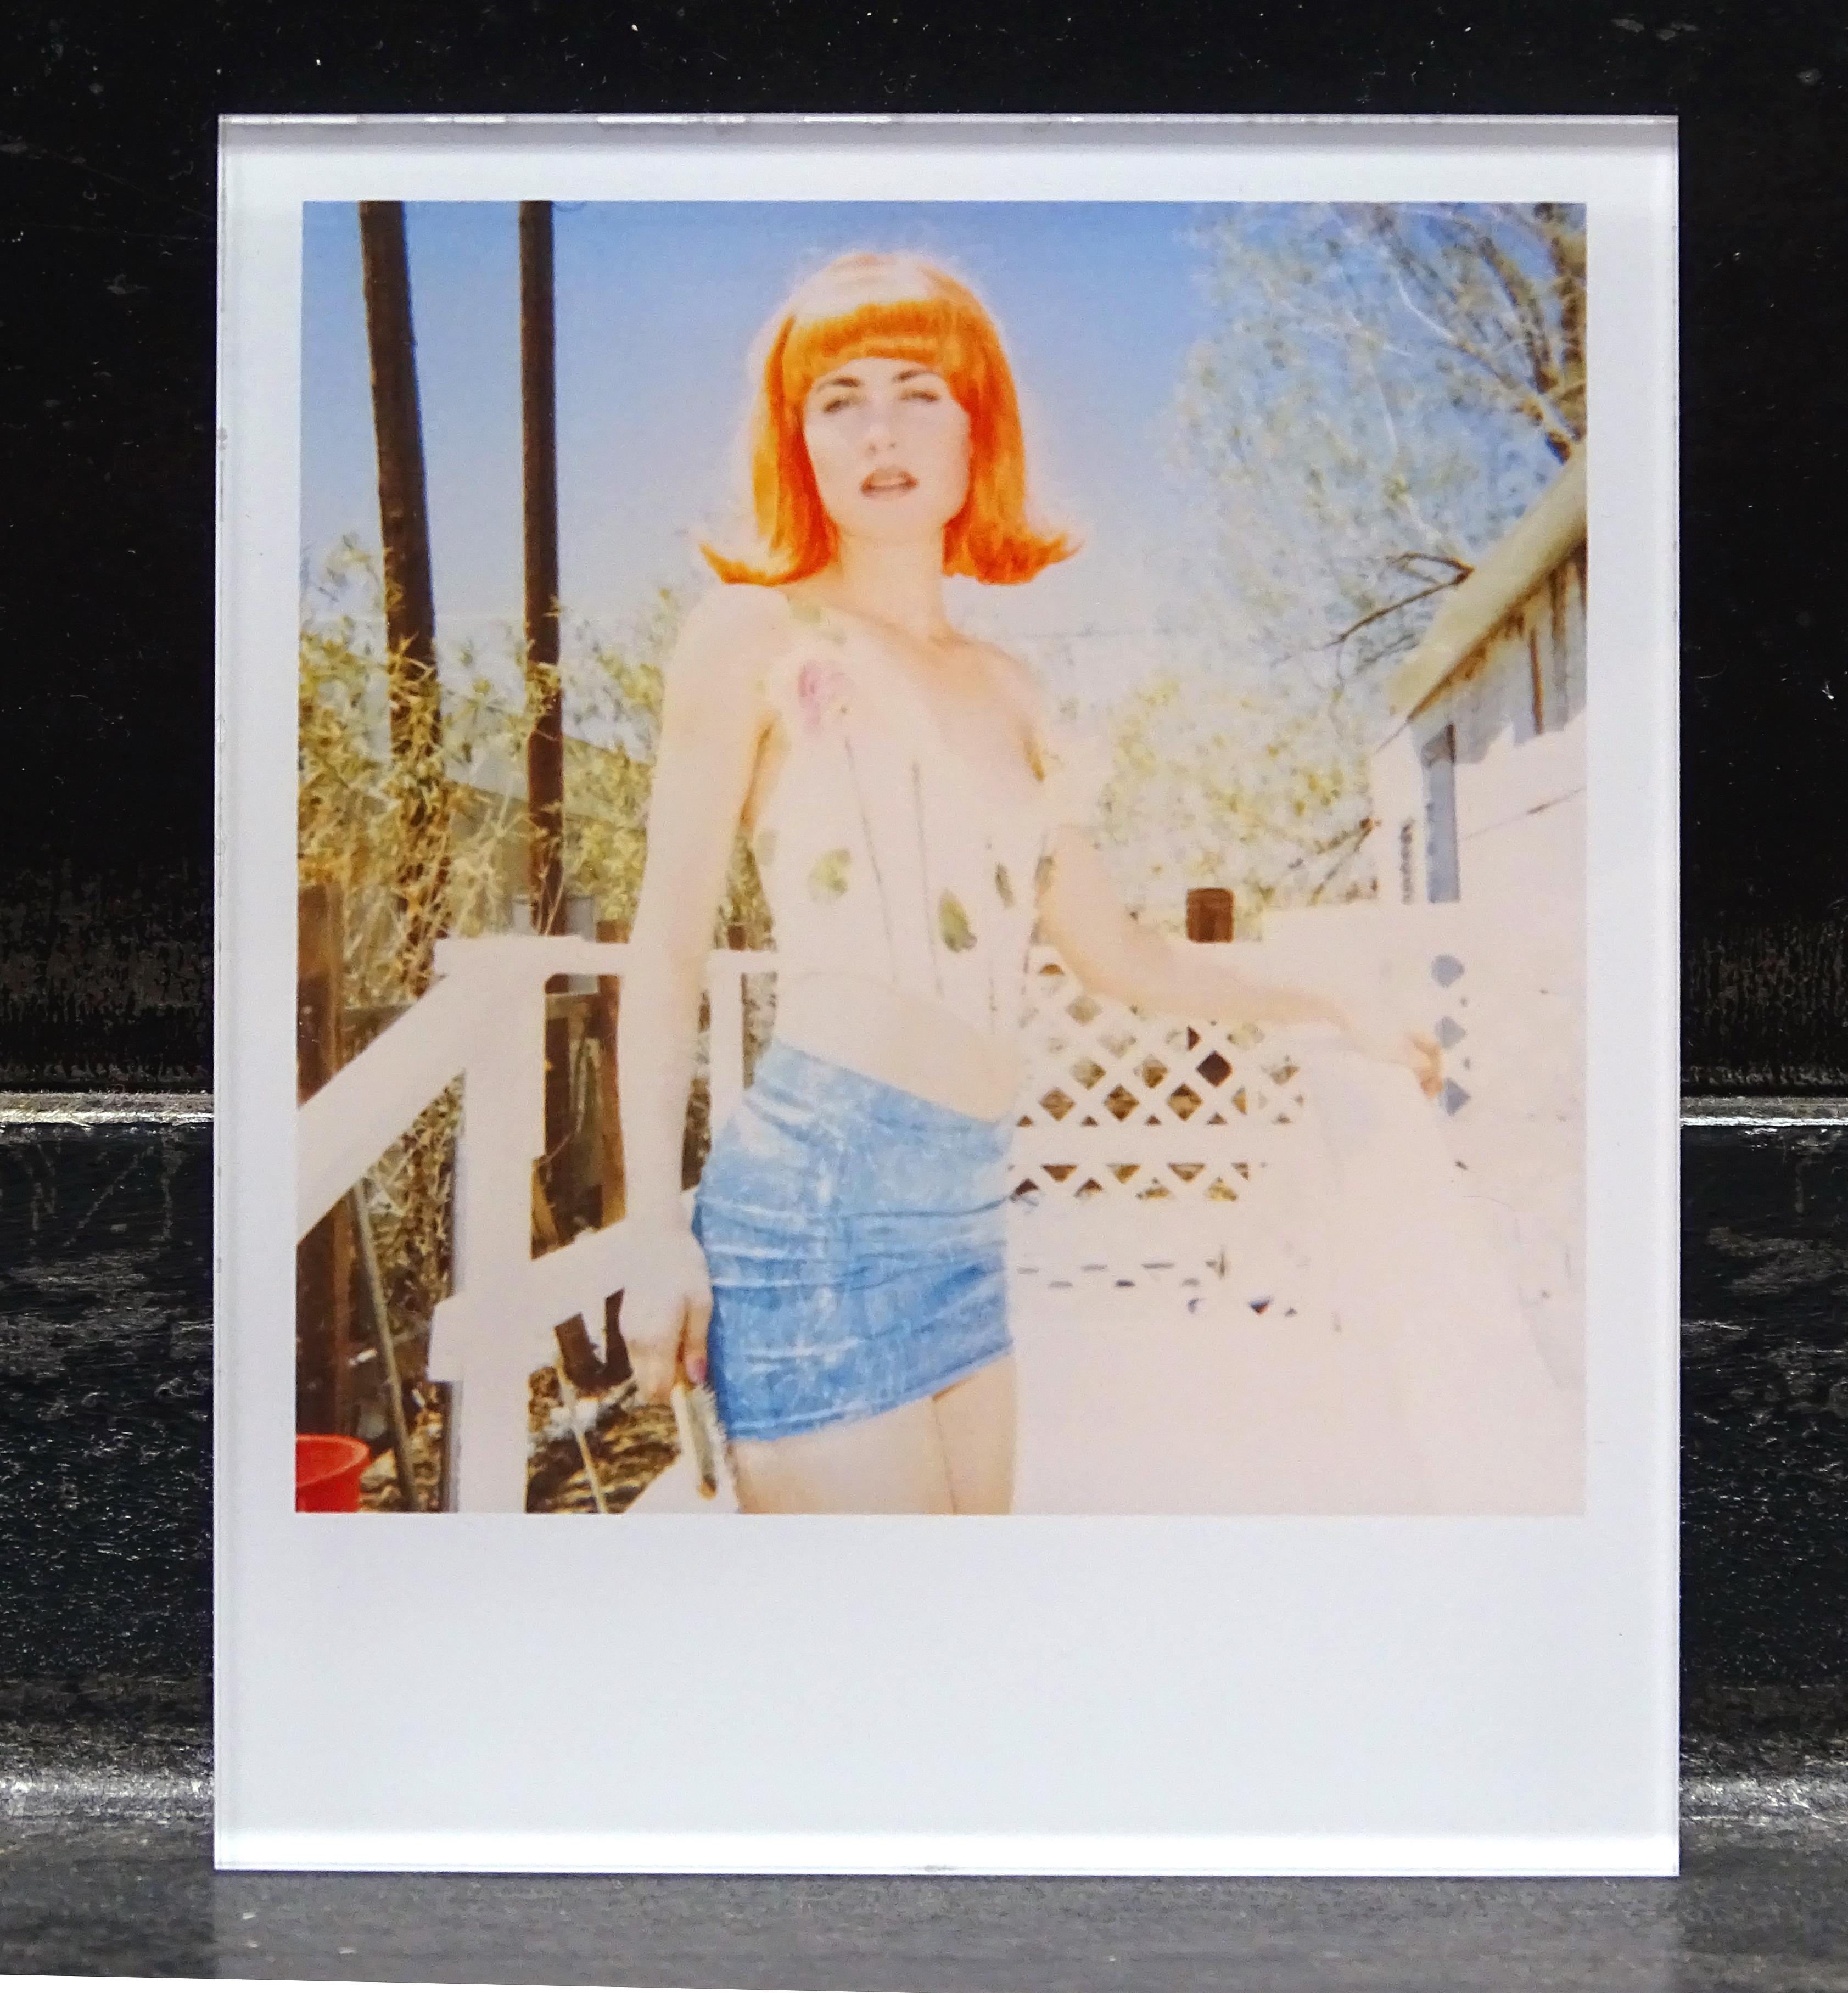 Die Minis von Stefanie Schneider
'White Trash Beautiful (29 Palms, CA), 1999
verso signiert und Signaturmarke
Digitale Lambda-Farbfotografien auf der Grundlage eines Polaroids

Offene Editionen in Polaroidgröße 1999-2013
10.7 x 8,8cm (Bild